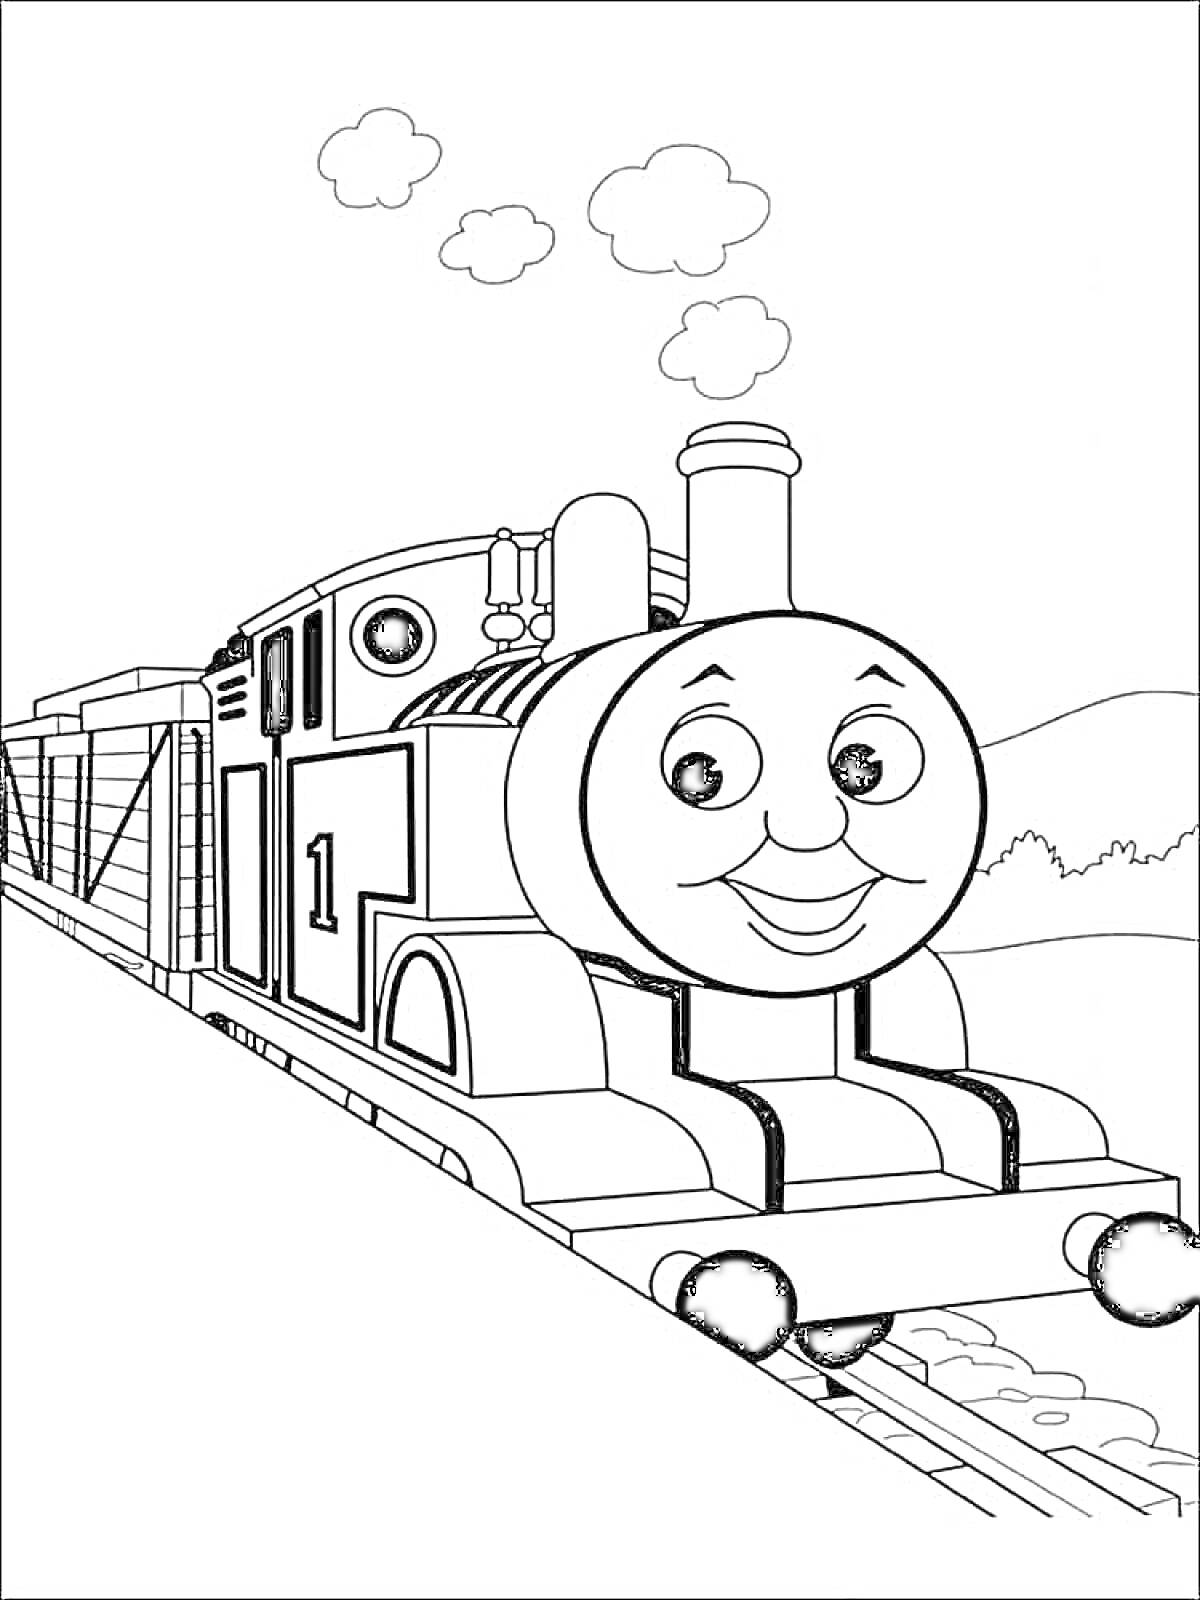 Раскраска Паровозик Томас на железной дороге с дымом и пейзажем на заднем фоне